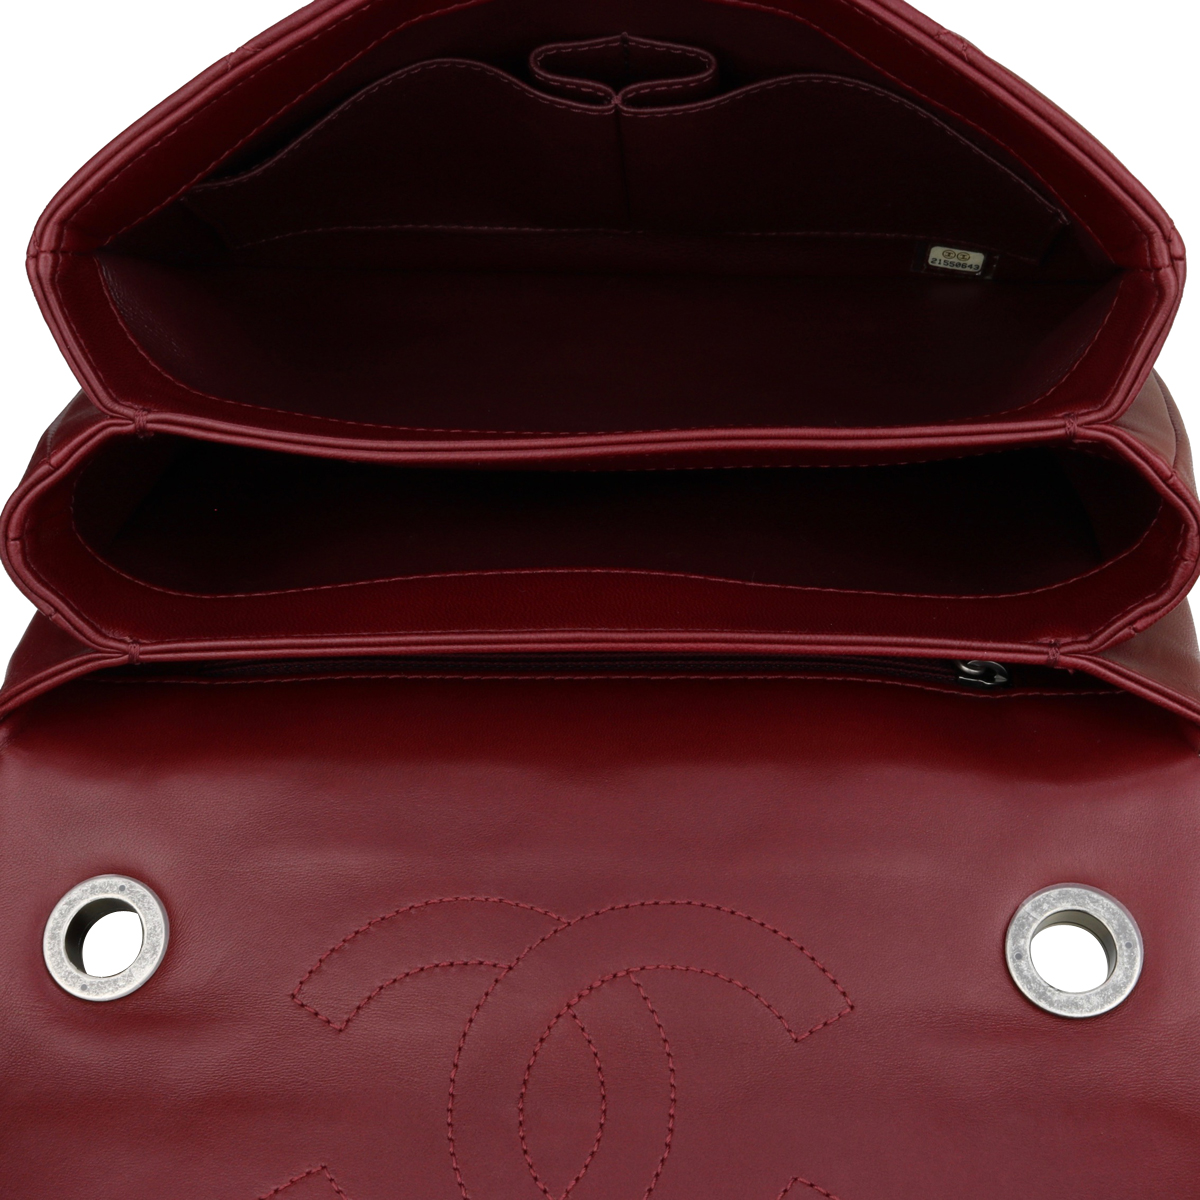 Black & Burgundy 'CC' Flap Bag, Authentic & Vintage